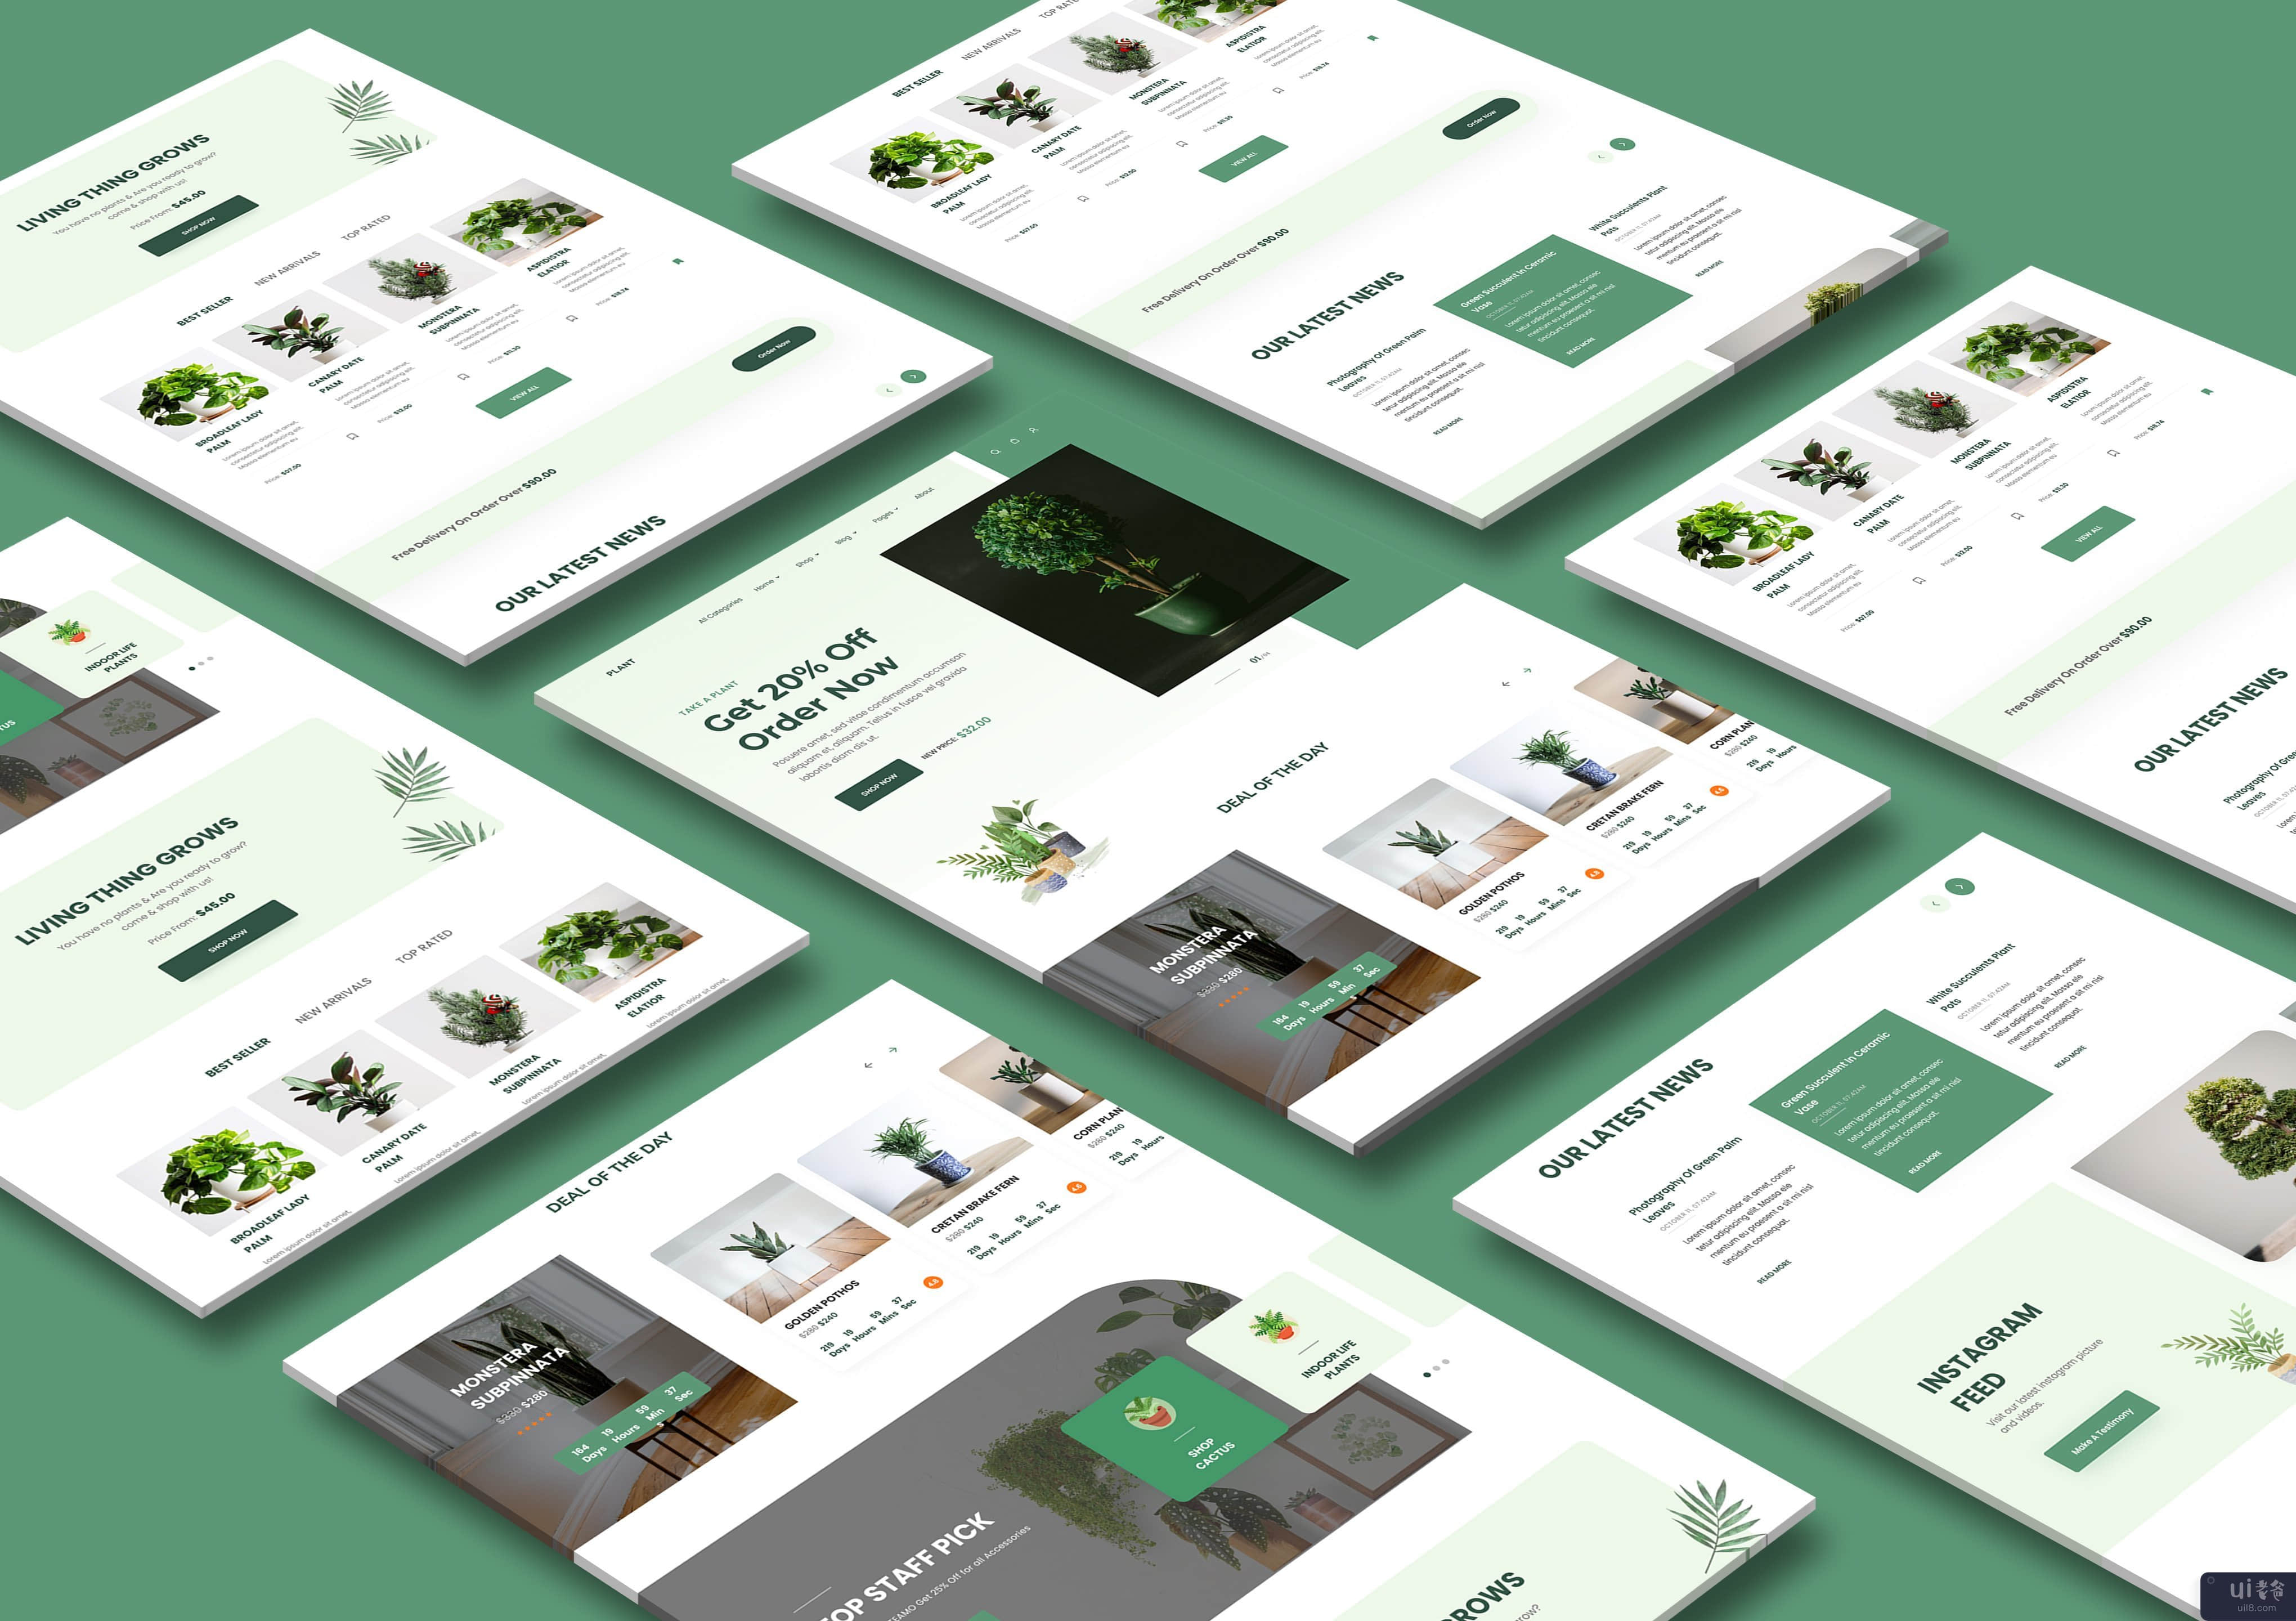 Plant Shop - 登陆页面设计(Plant Shop - Landing Page Design)插图